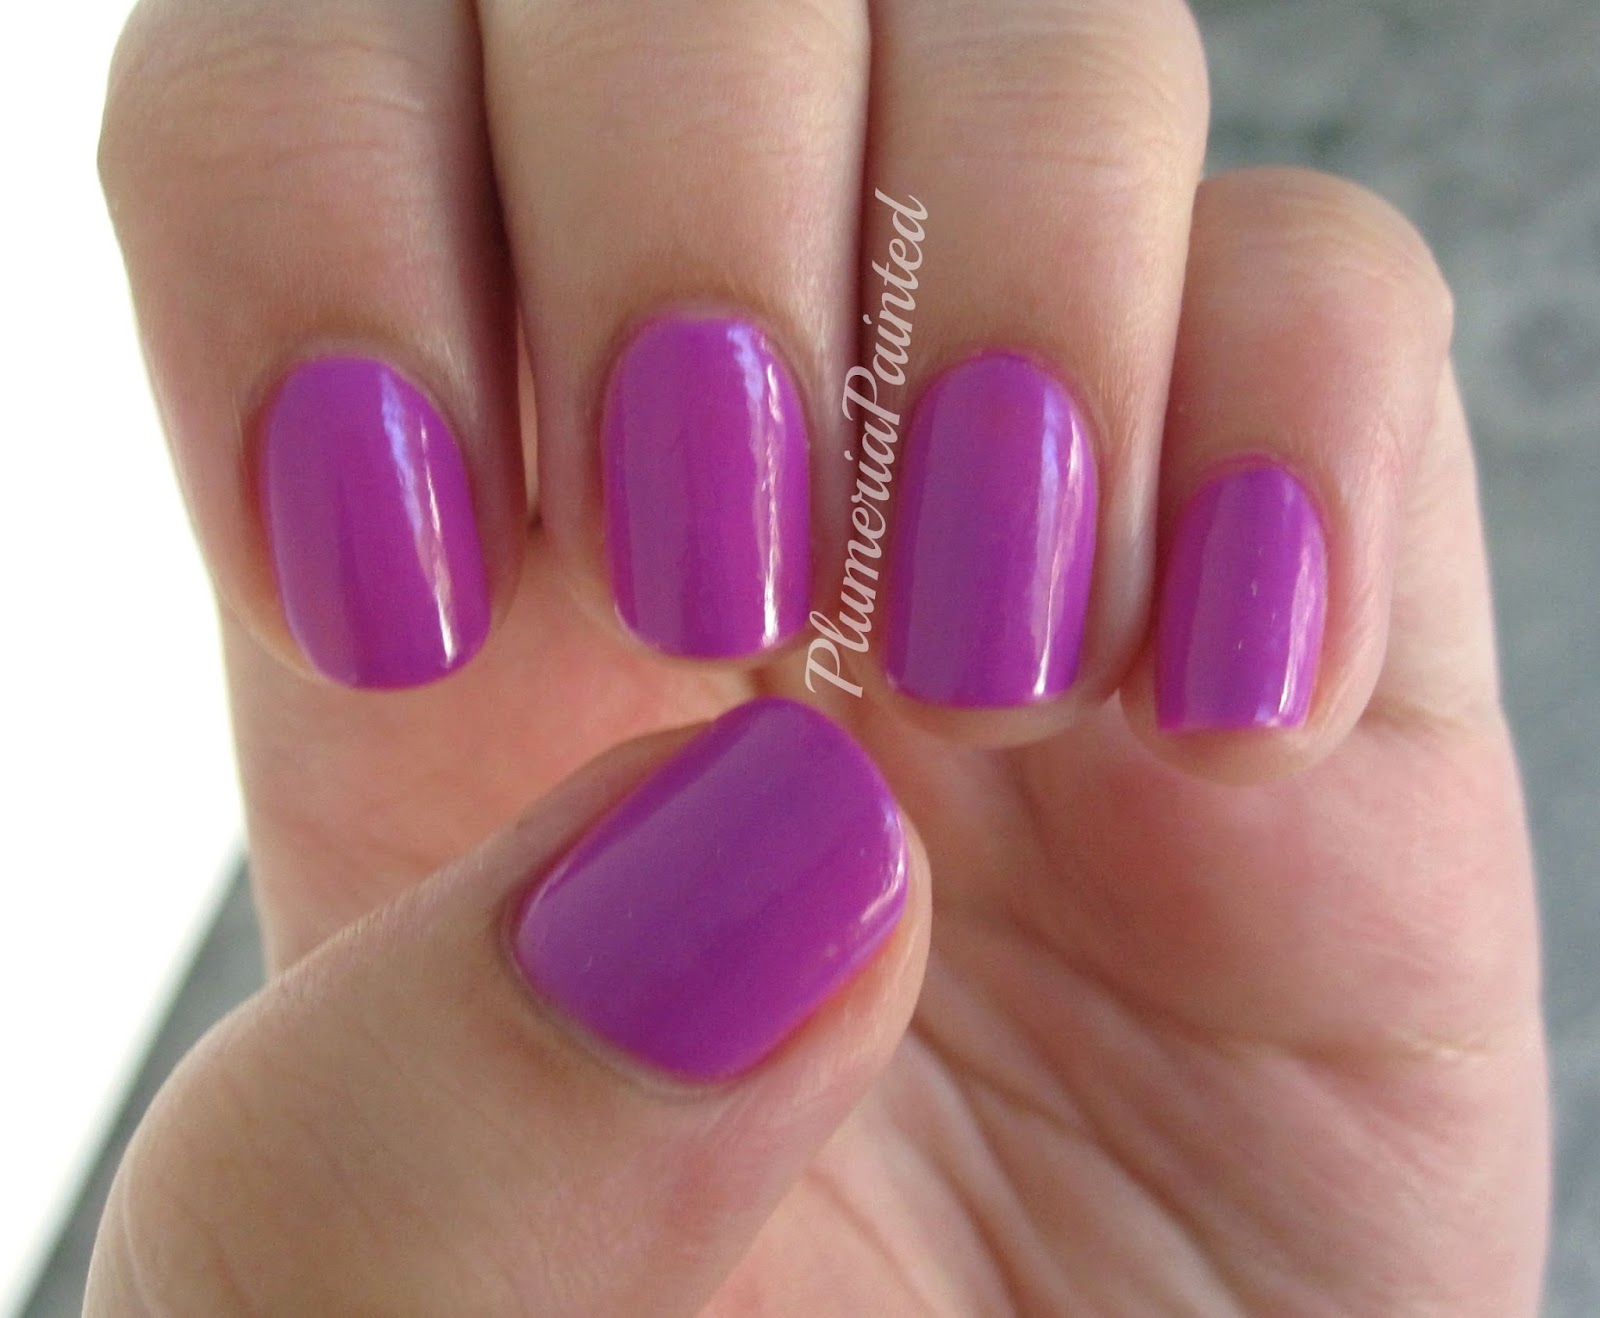 orly gel nail polish color